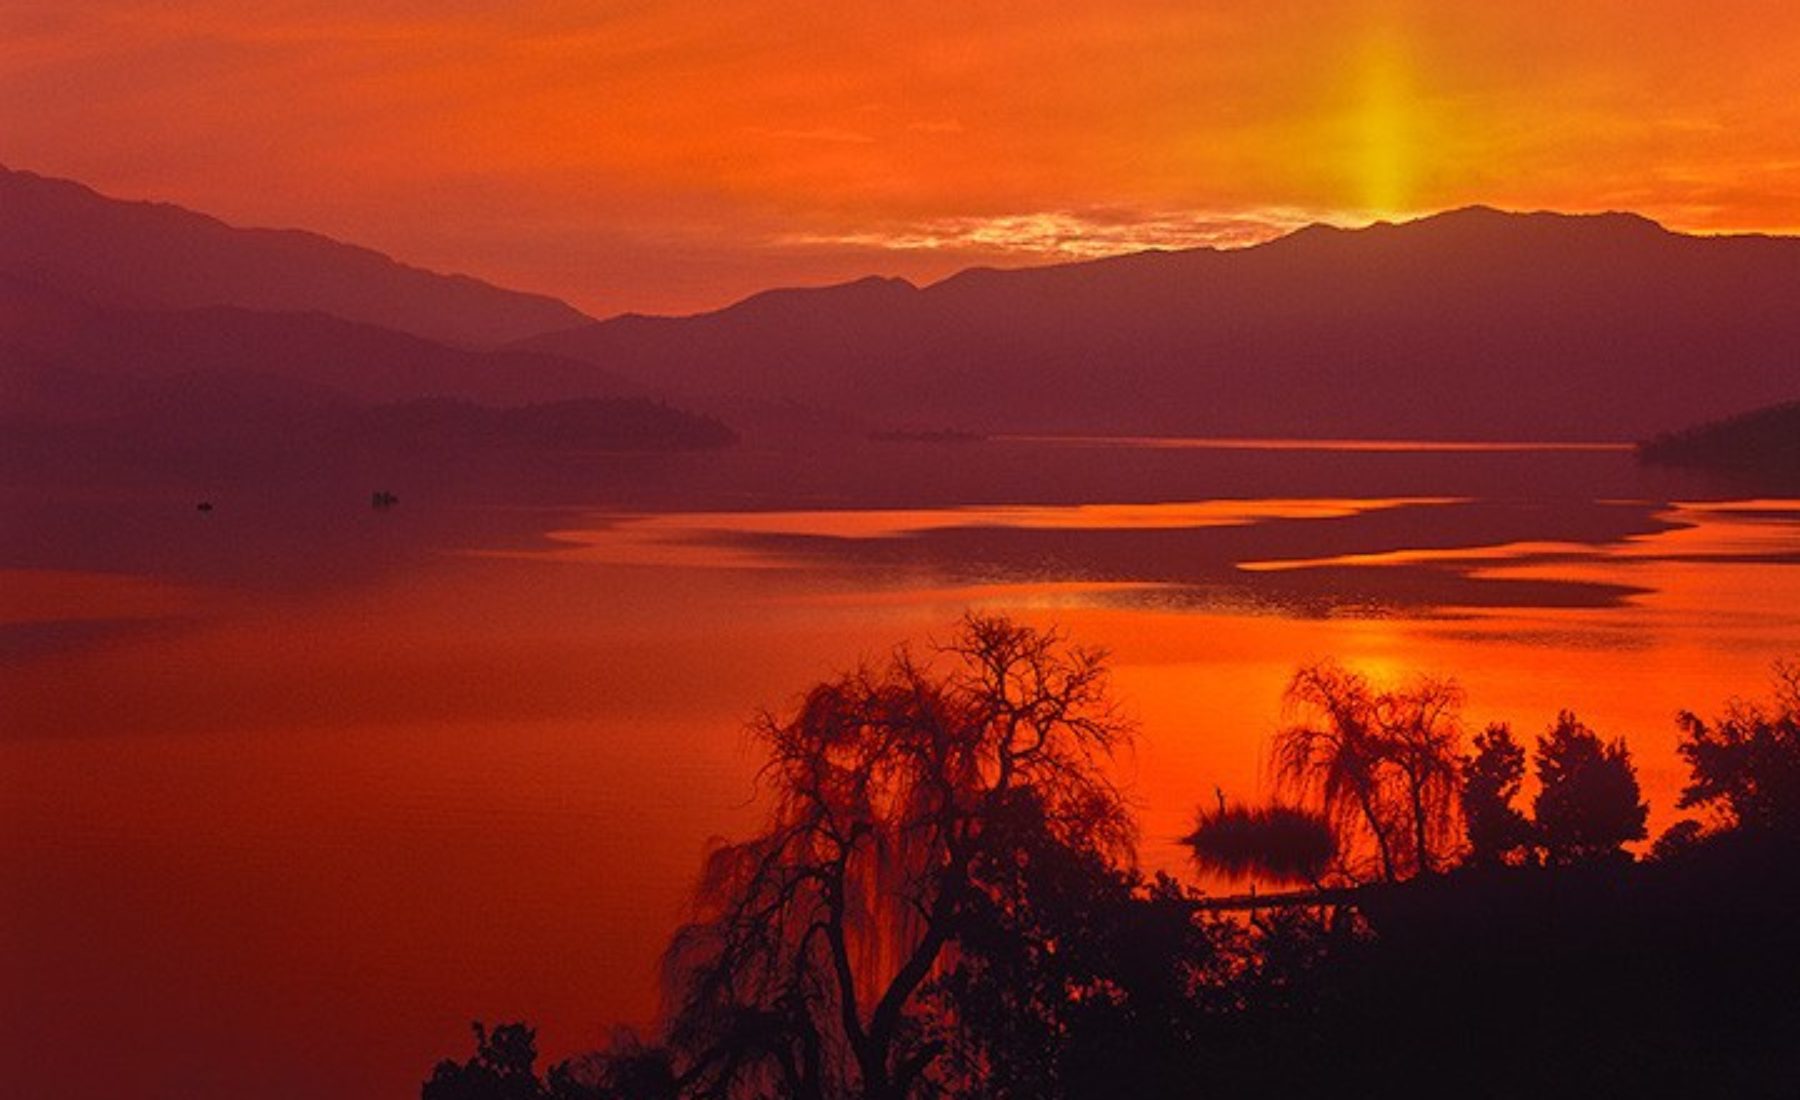 Lake sunsets